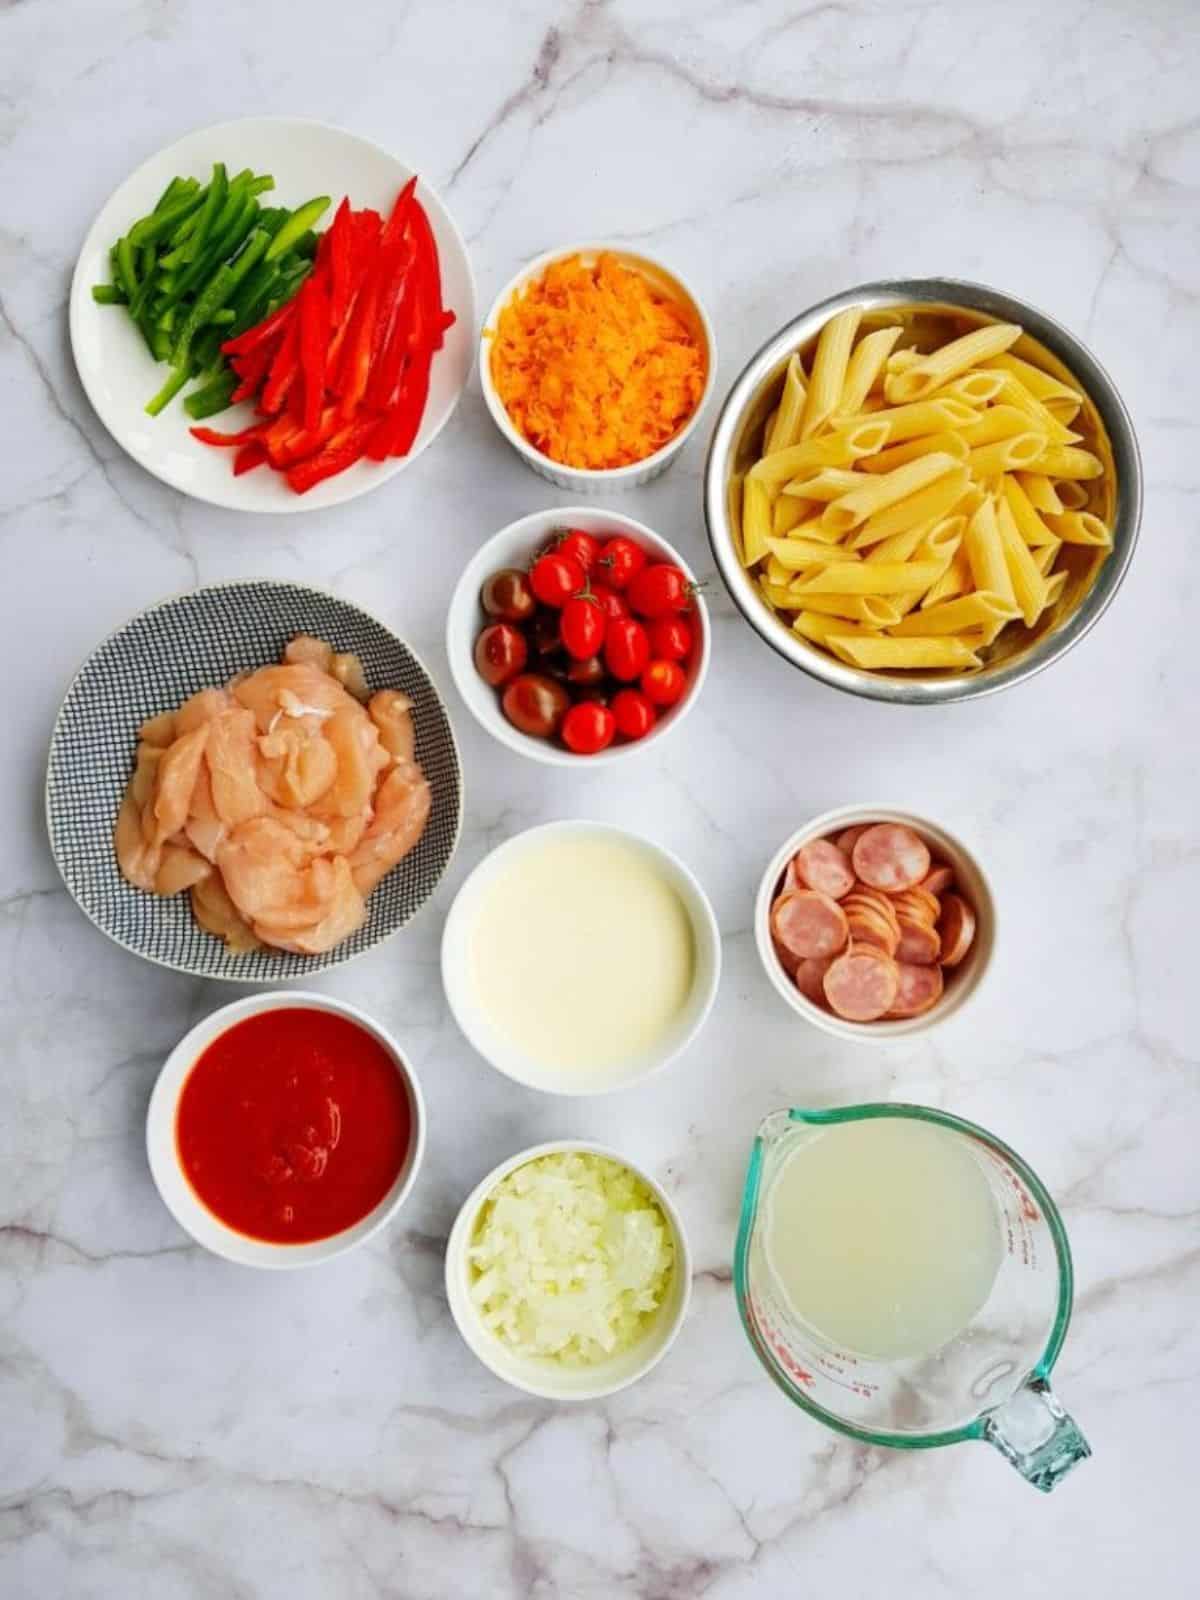 Spicy Chicken Pasta ingredients.